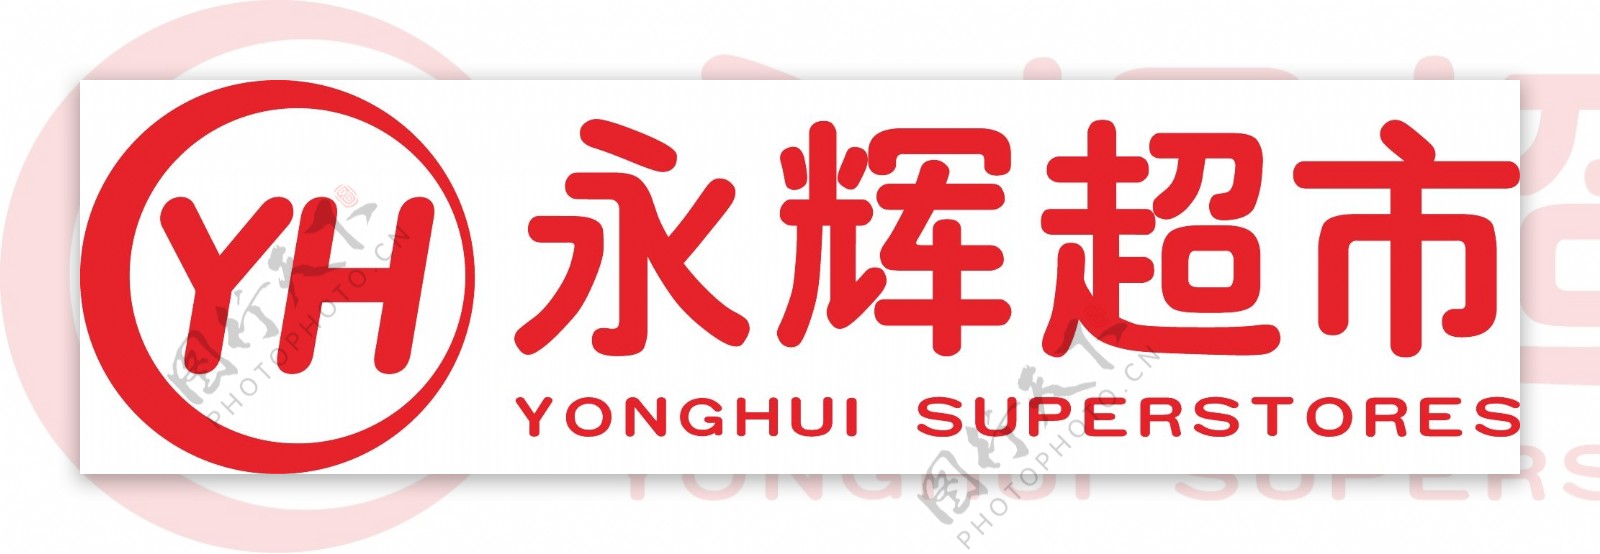 永辉超市logo图片